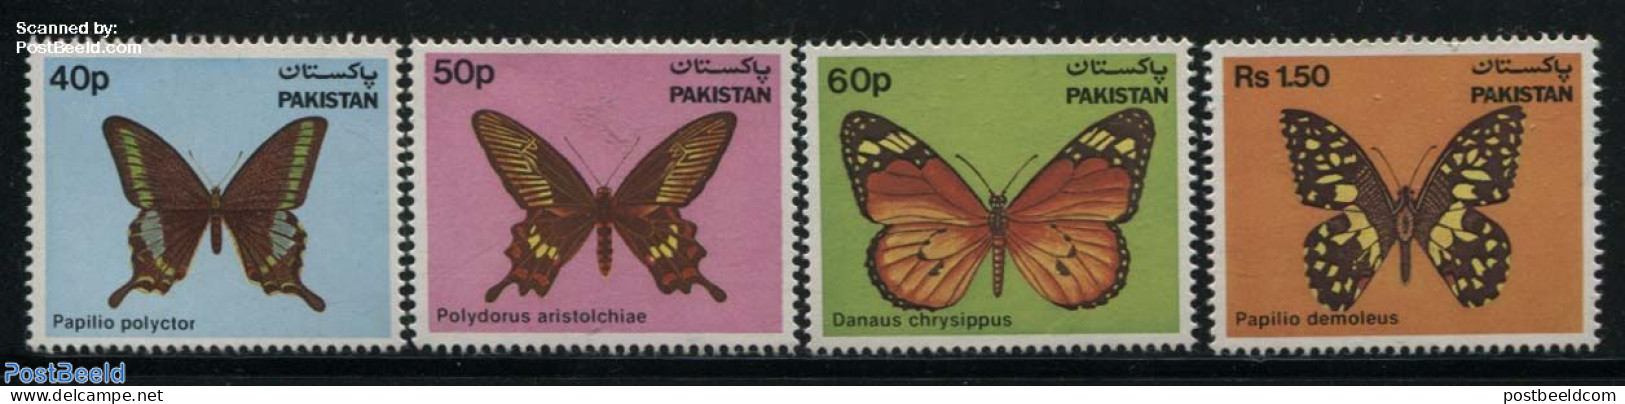 Pakistan 1983 Butterflies 4v, Mint NH, Nature - Butterflies - Pakistan